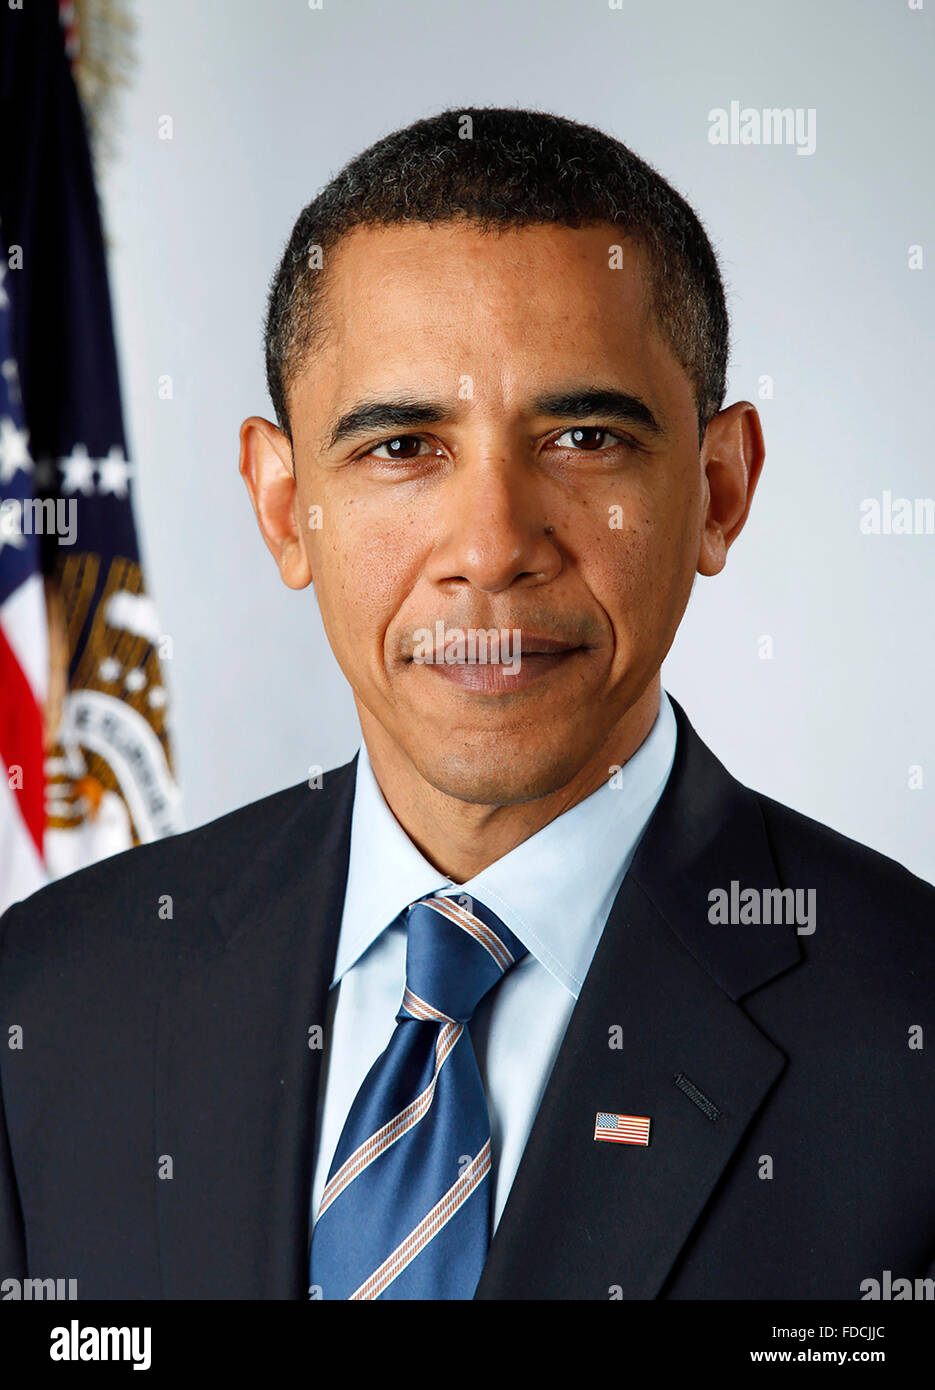 Barack Obama. Retrato oficial de Barack Obama (n.1961), el 44th Presidente de los EE.UU., tomado el 13th 2009 de enero, cuando era Presidente electo y una semana antes de asumir el cargo. Foto de stock